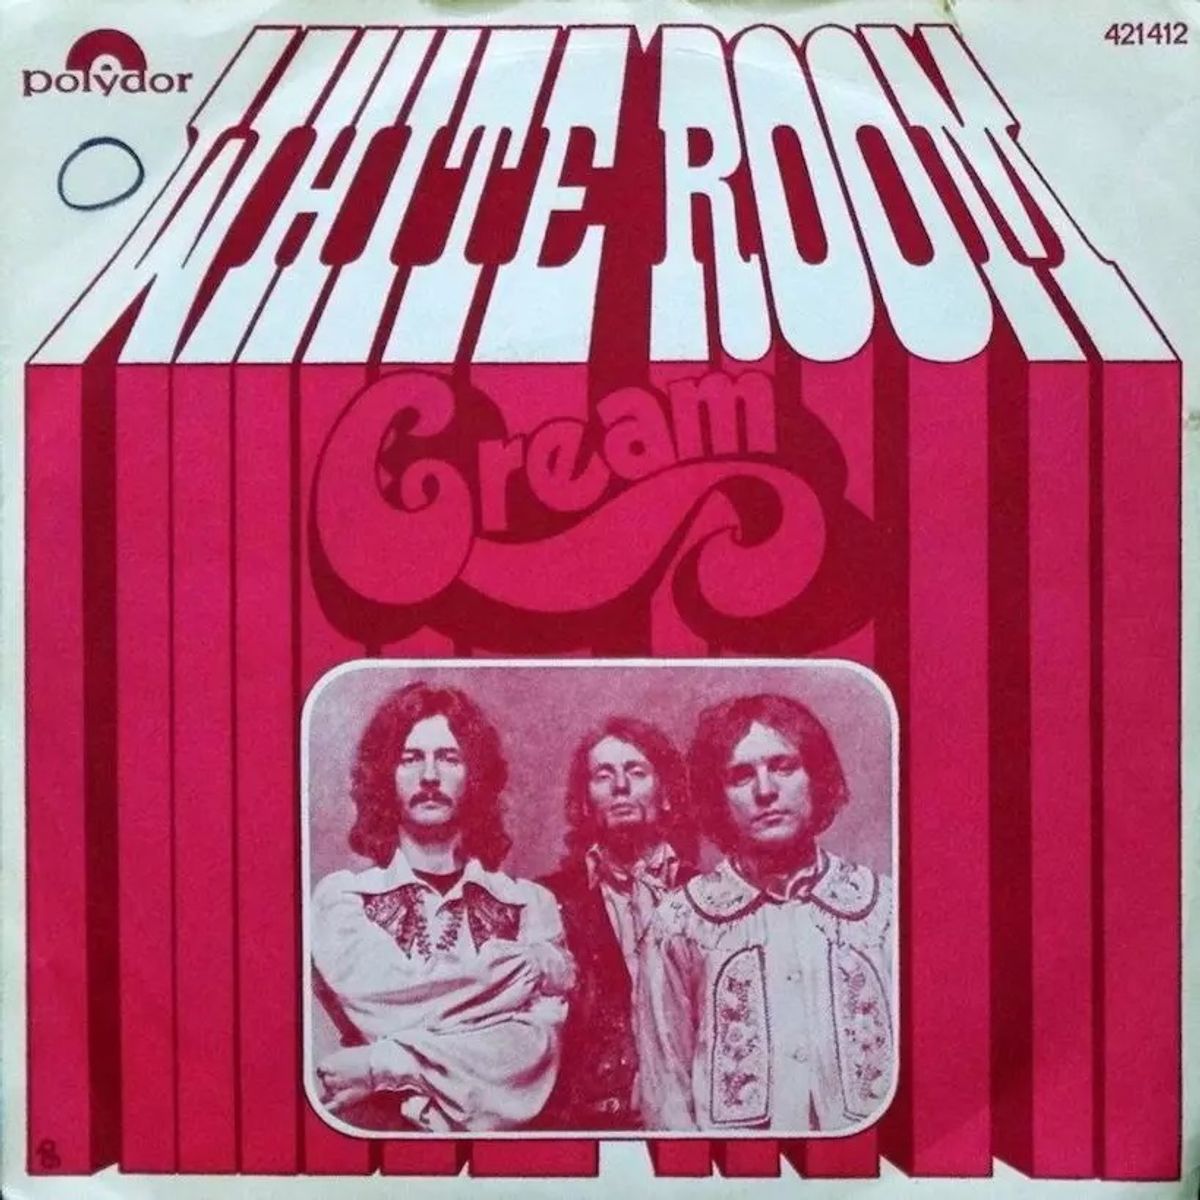 #MisterBaker - Cream - White Room (1968)